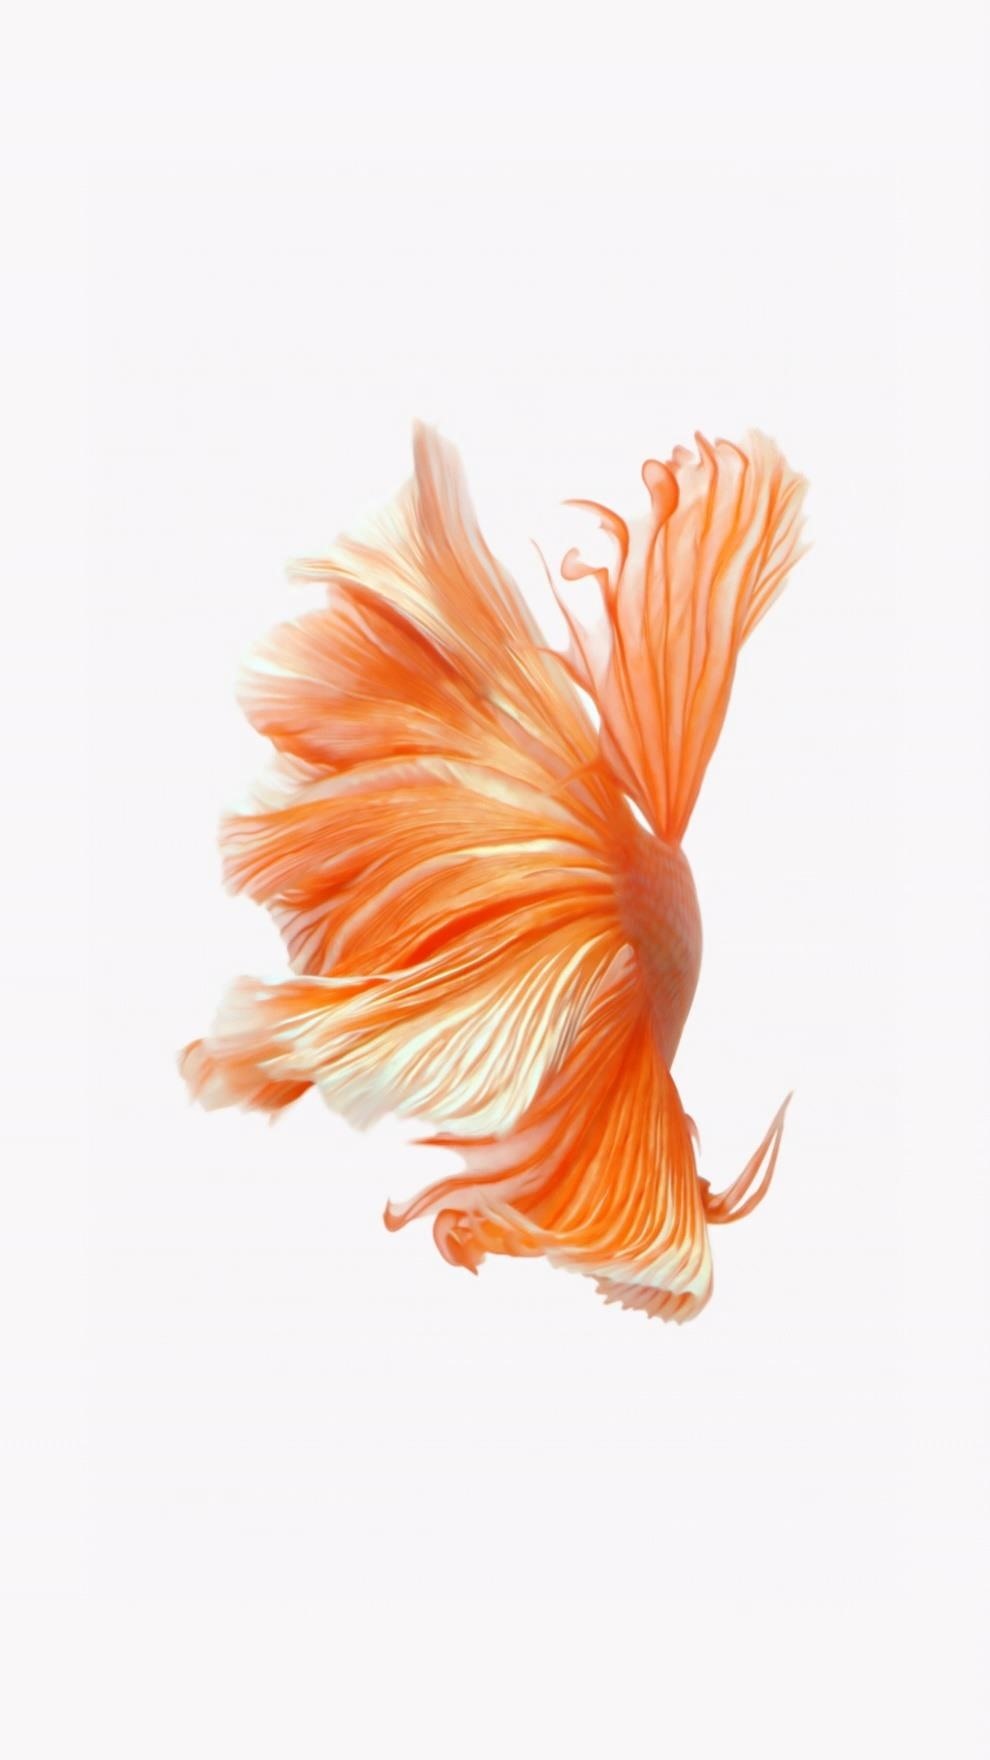 Fish Live Wallpaper Aquarium - Apps on Google Play